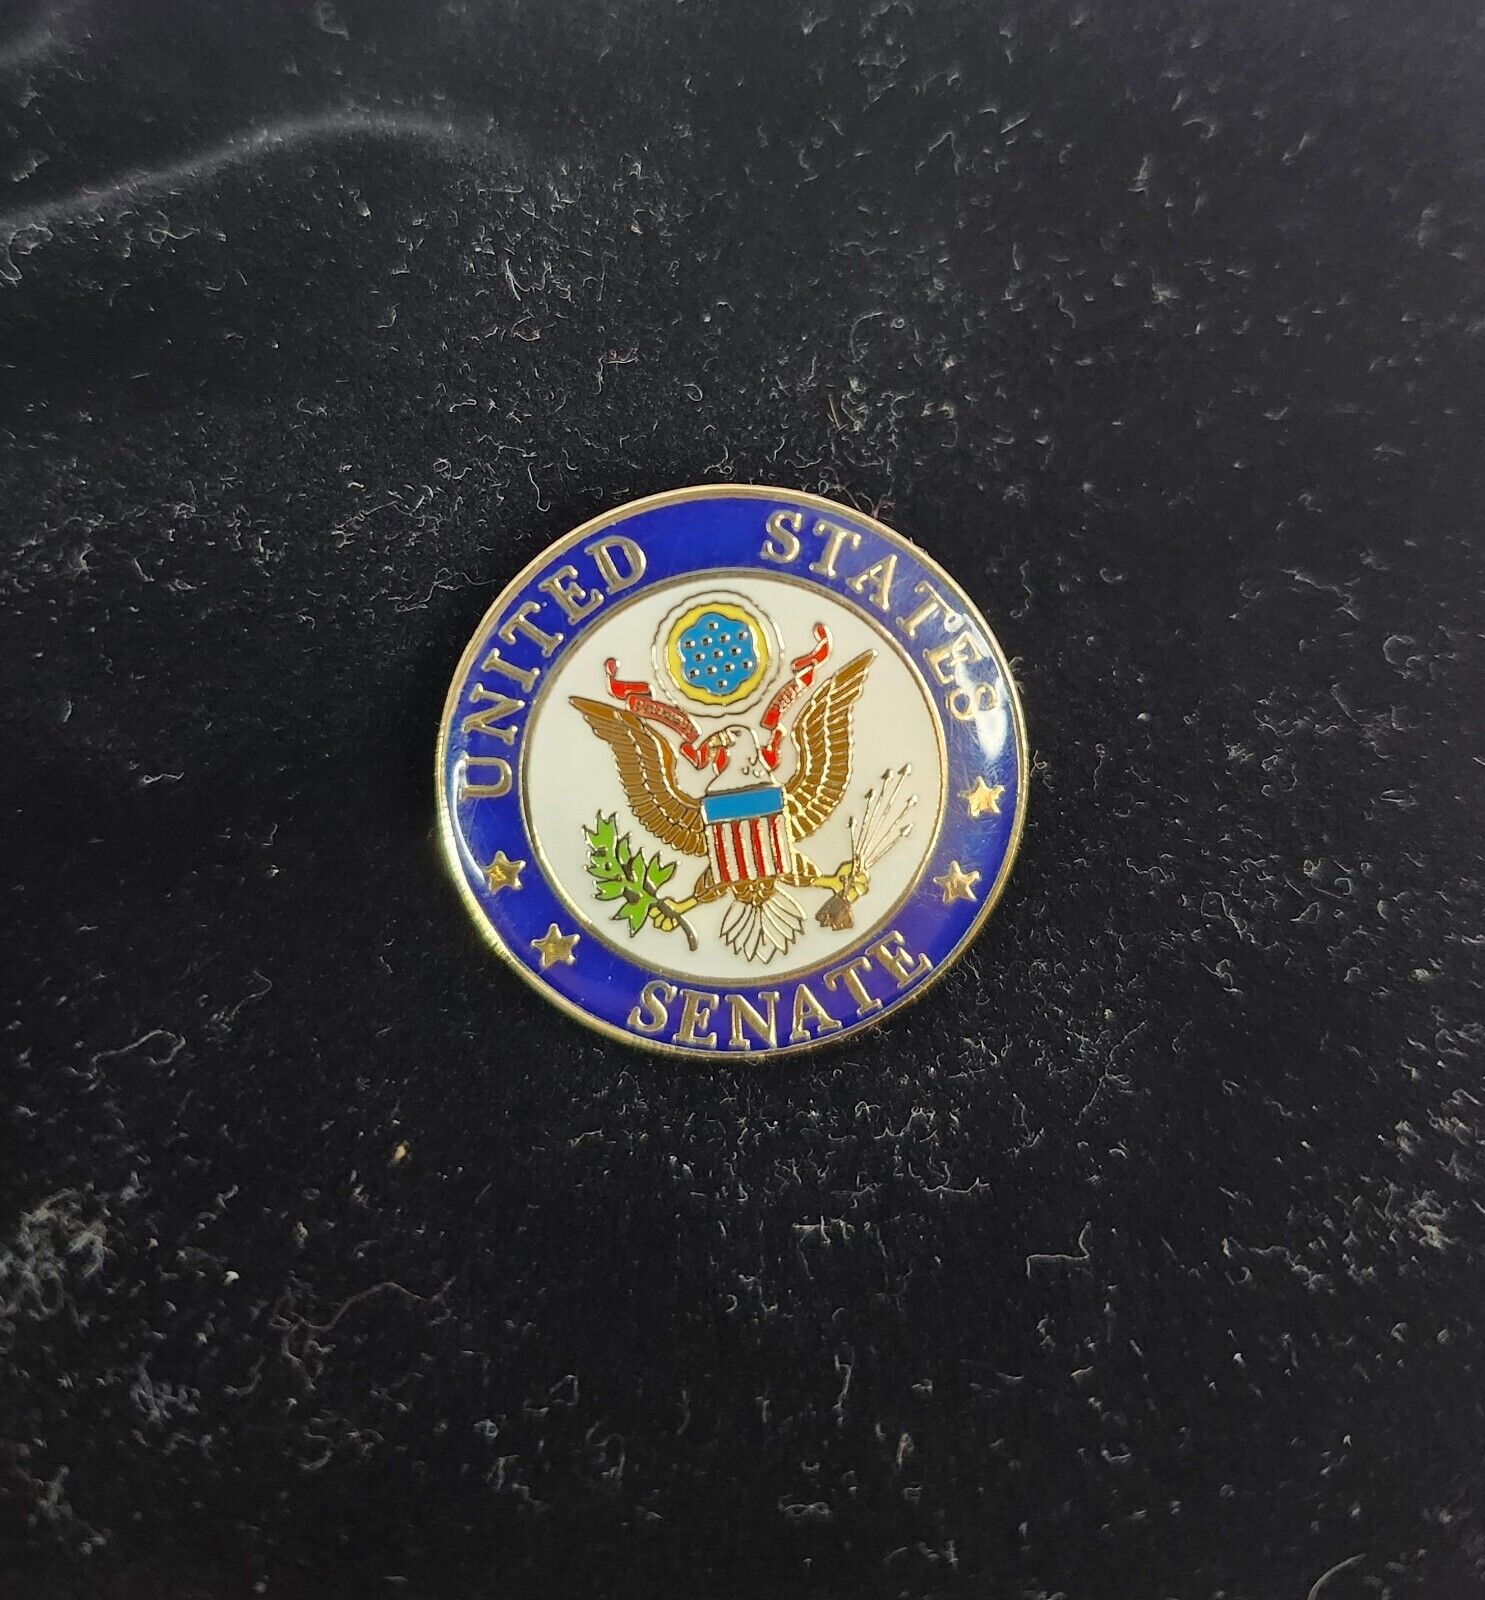 United States Senate Lapel Pin Eagle Blue Gold Pinmart